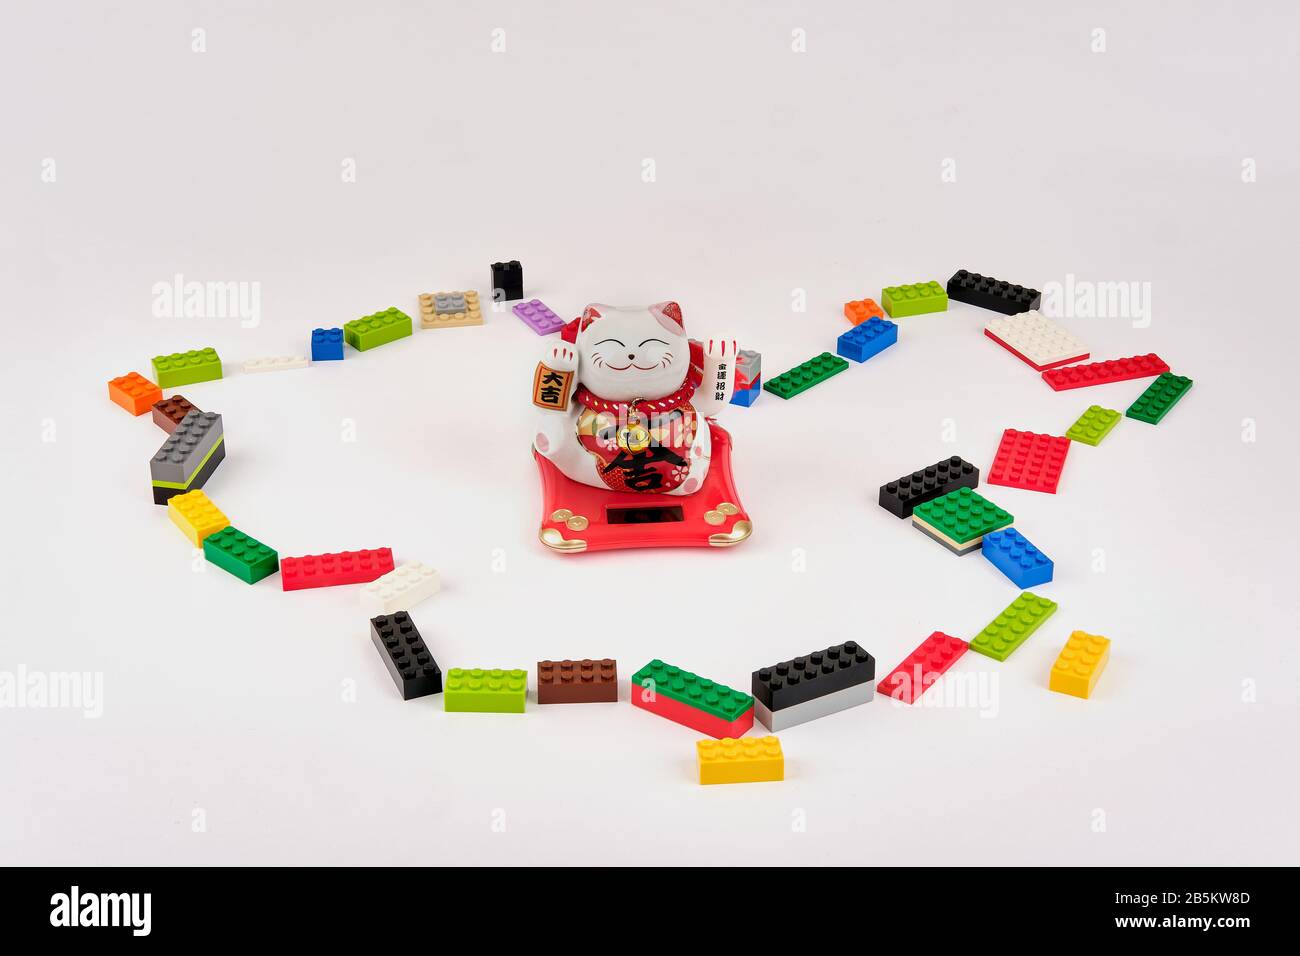 LEGO Bricks Great Wall of China Konzept Umriss der chinesischen Weltkarte  mit chinesischer Glückskatze im Zentrum Stockfotografie - Alamy